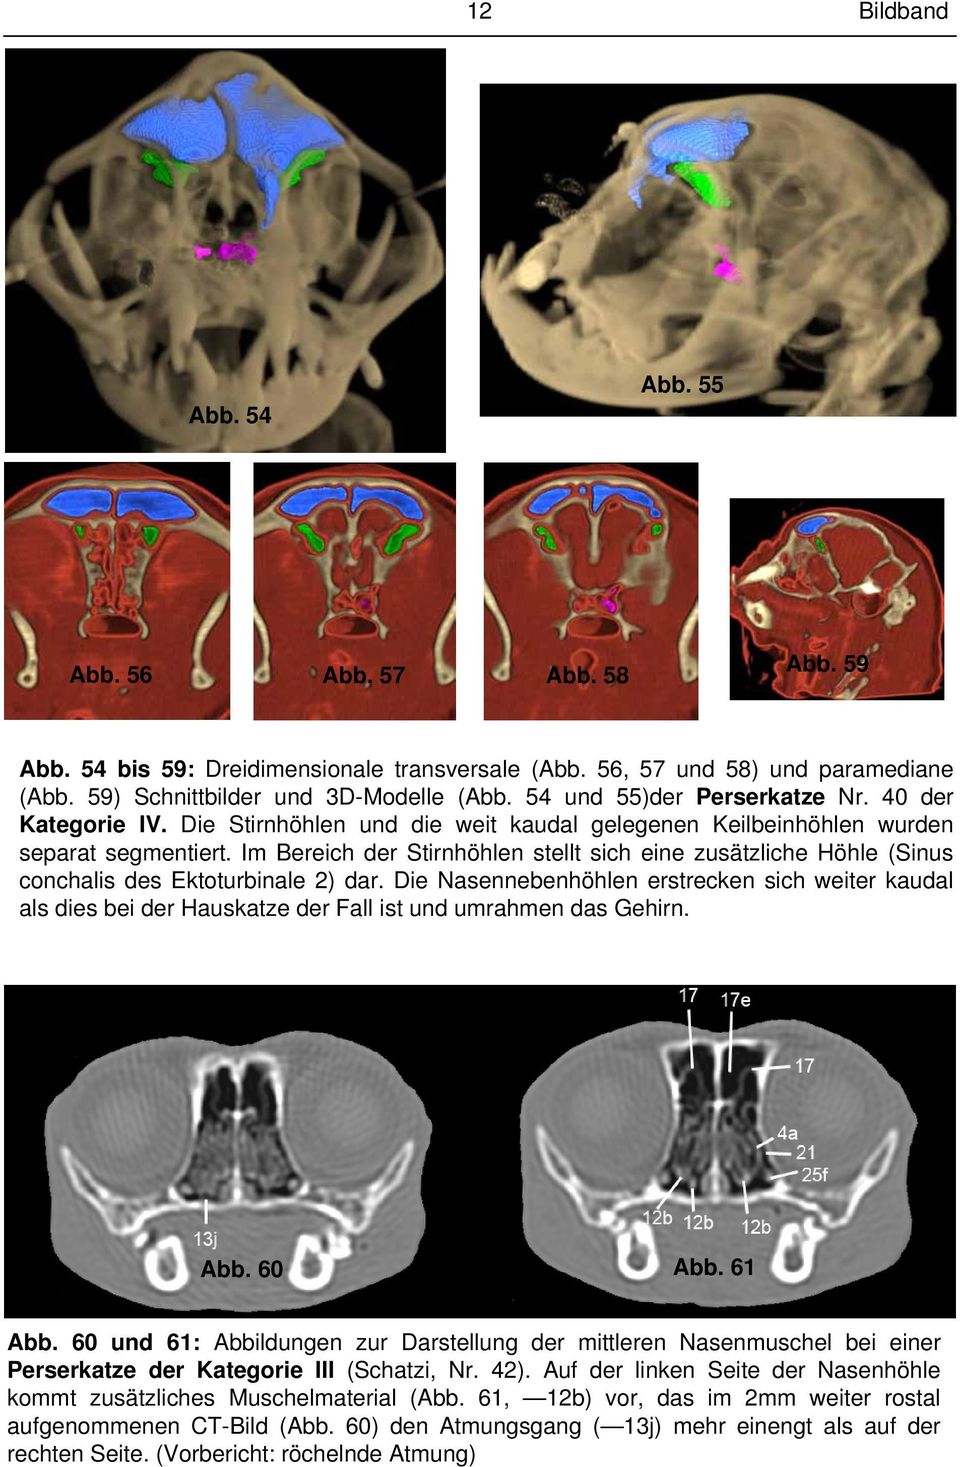 Im Bereich der Stirnhöhlen stellt sich eine zusätzliche Höhle (Sinus conchalis des Ektoturbinale 2) dar.